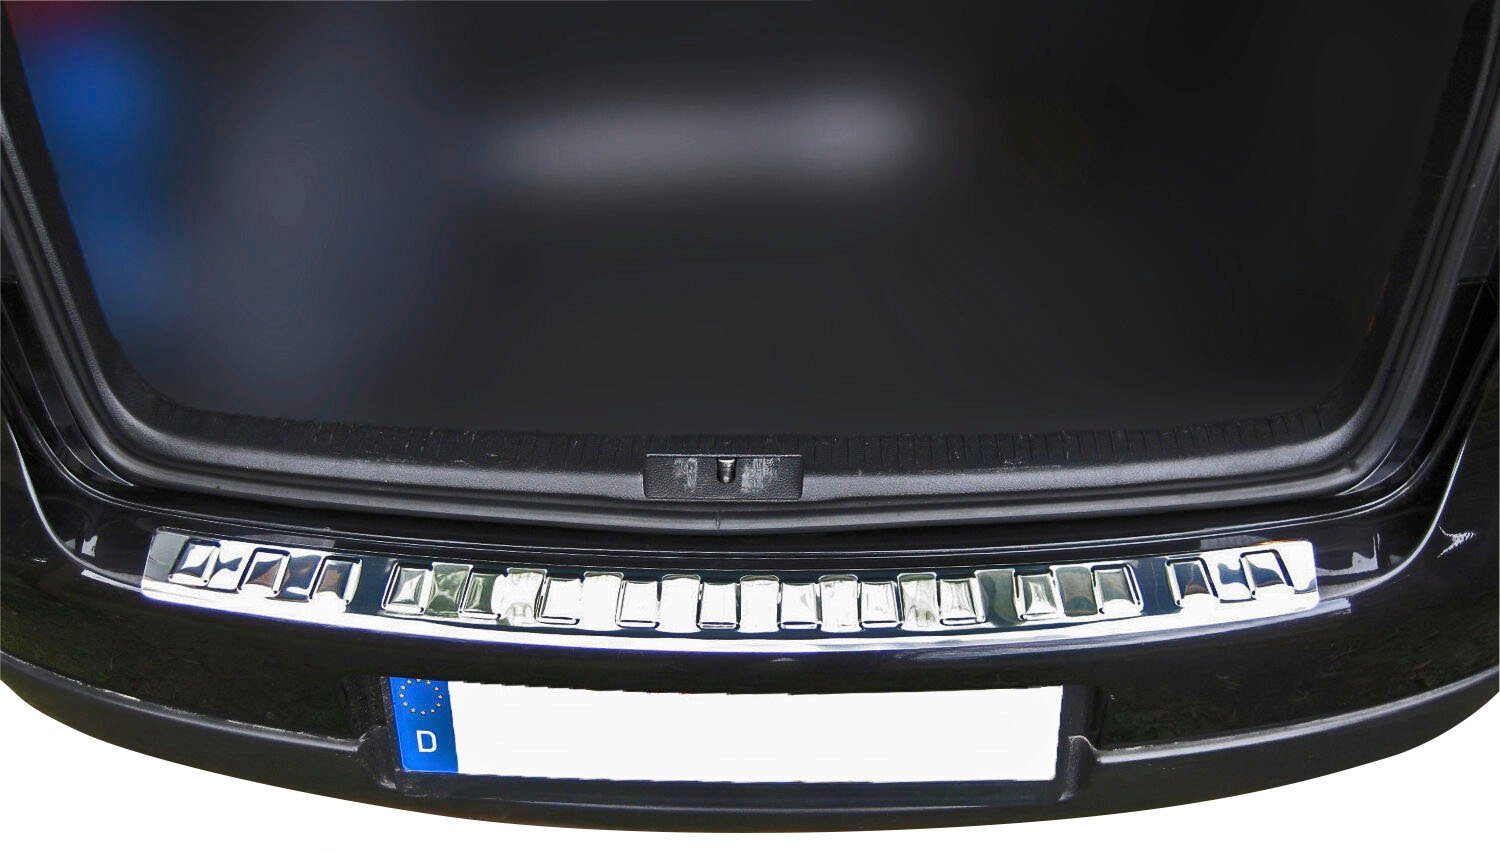 RECAMBO Ladekantenschutz, Zubehör für VW GOLF 5 LIMO, 2003-2008, Edelstahl  chrom poliert, mit Abkantung